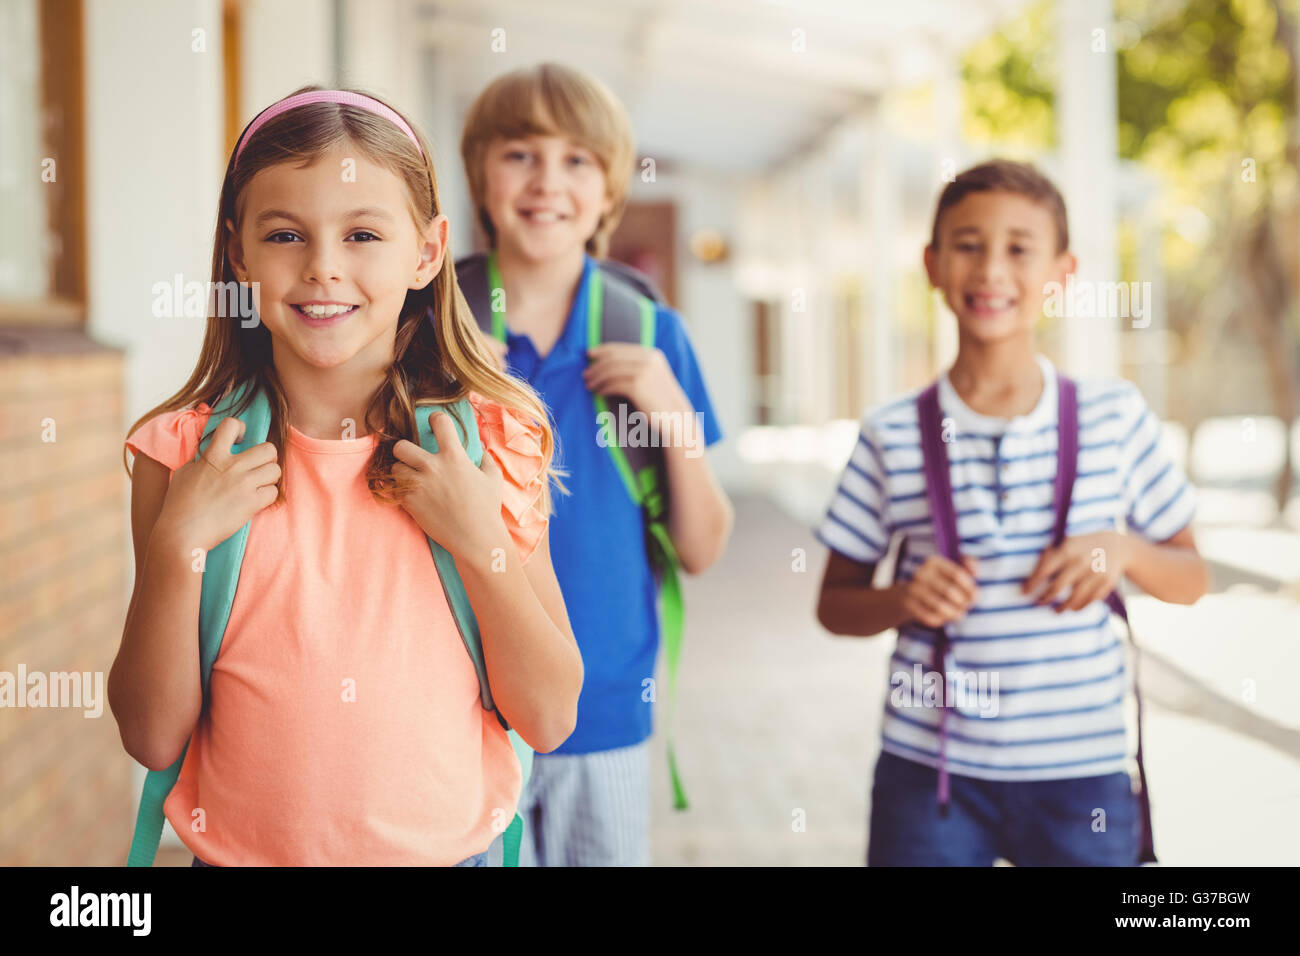 Lächelnd Schule Kinder stehen im Flur der Schule Stockfoto